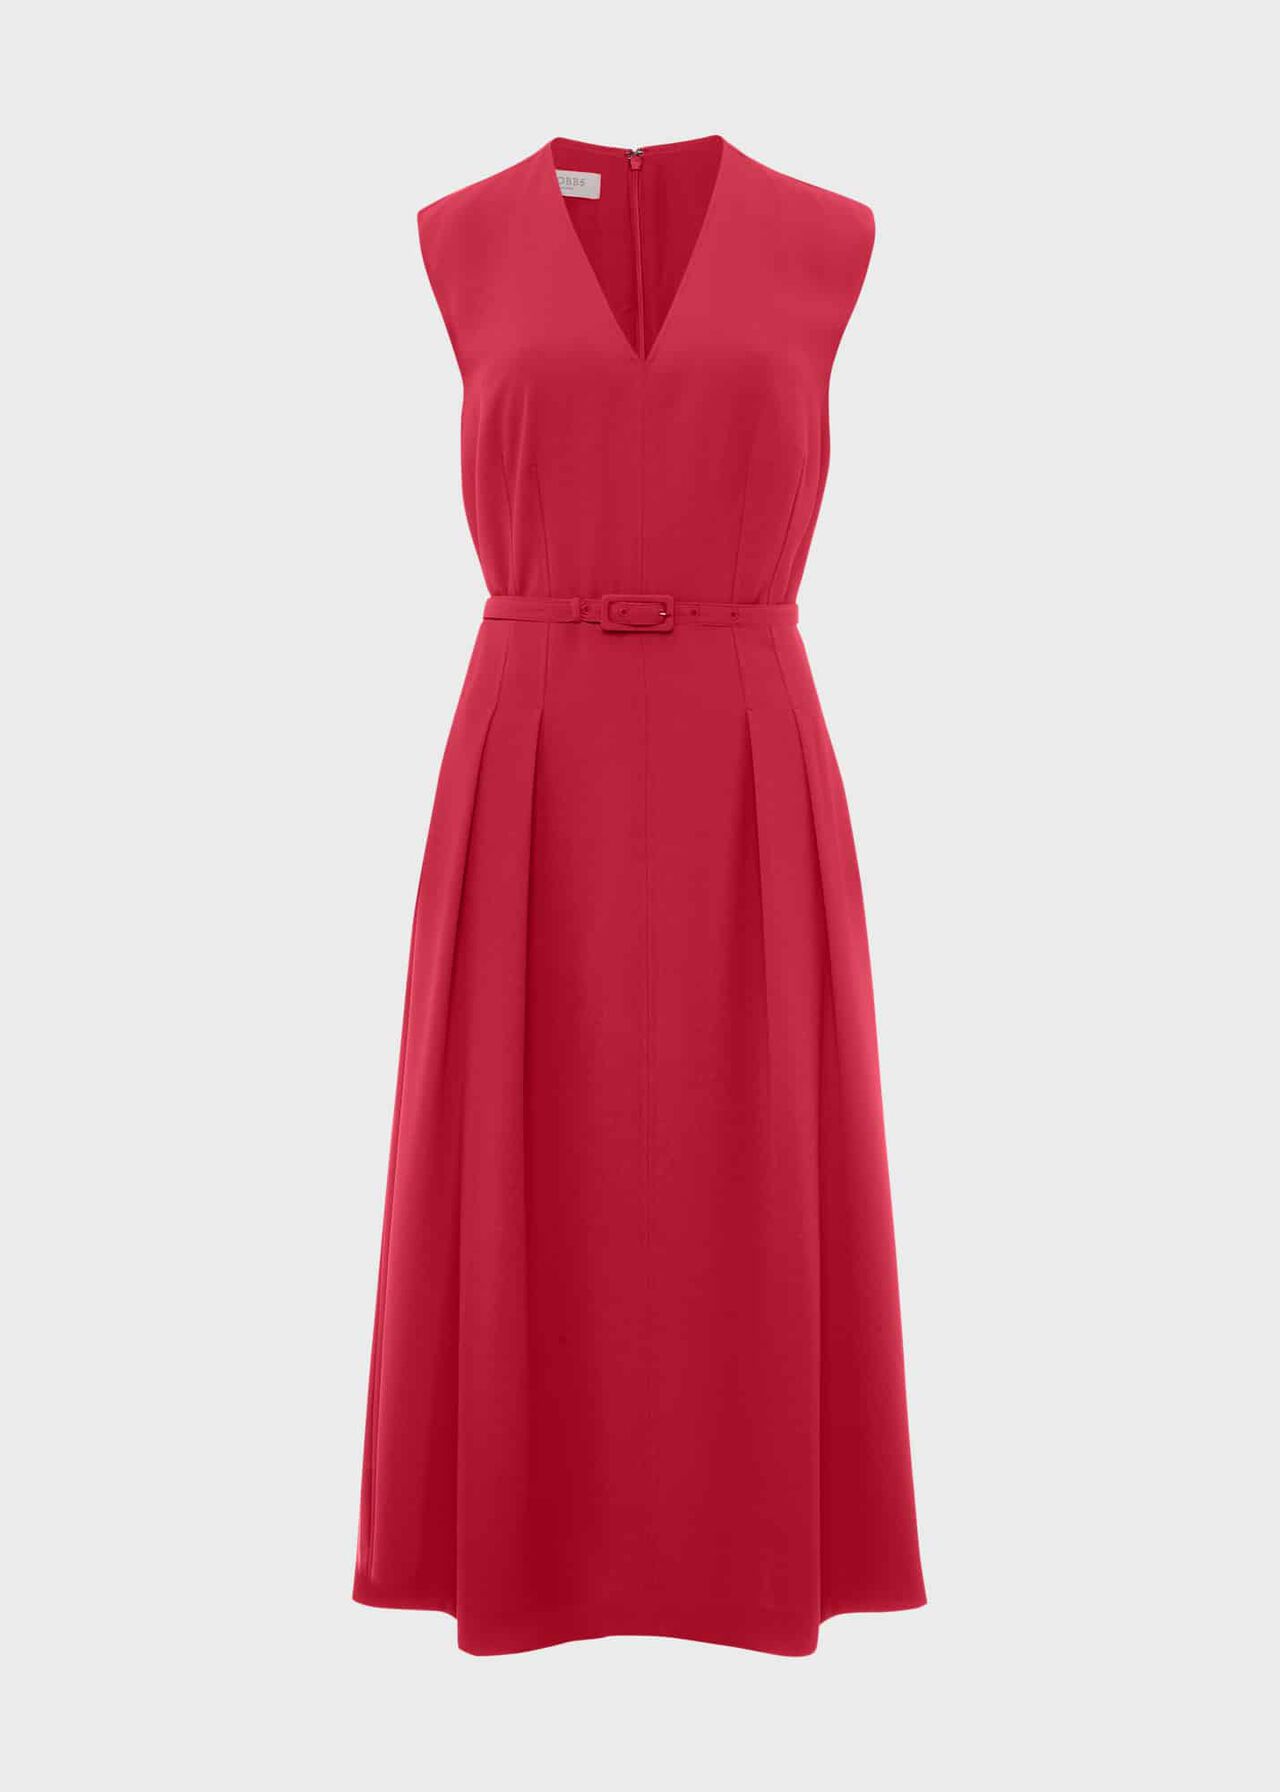 Tessa Dress, Cranberry Pink, hi-res